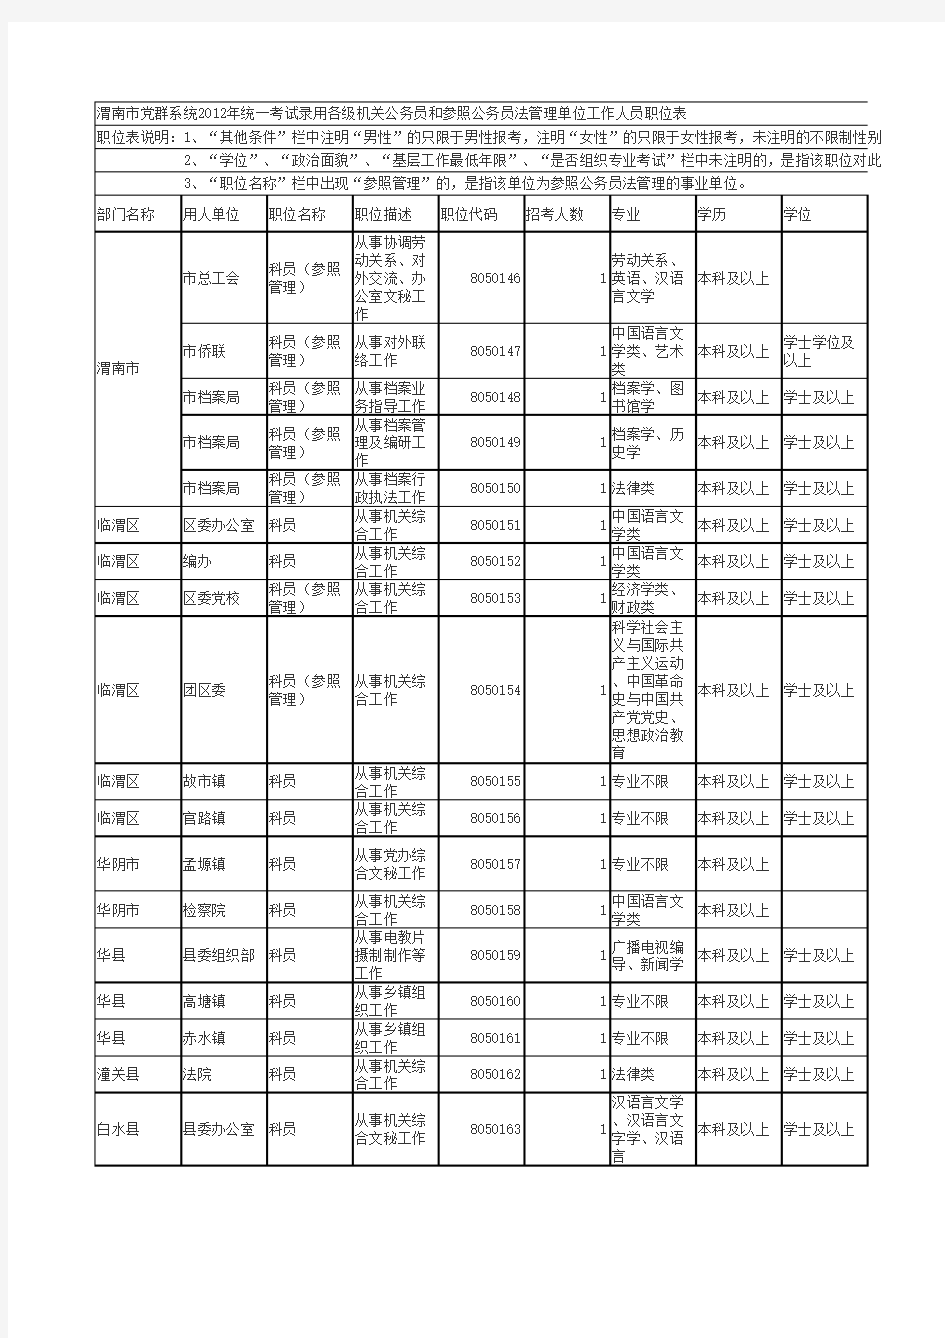 渭南市党群系统2012年各级机关公务员和参照公务员法管理单位工作人员职位表